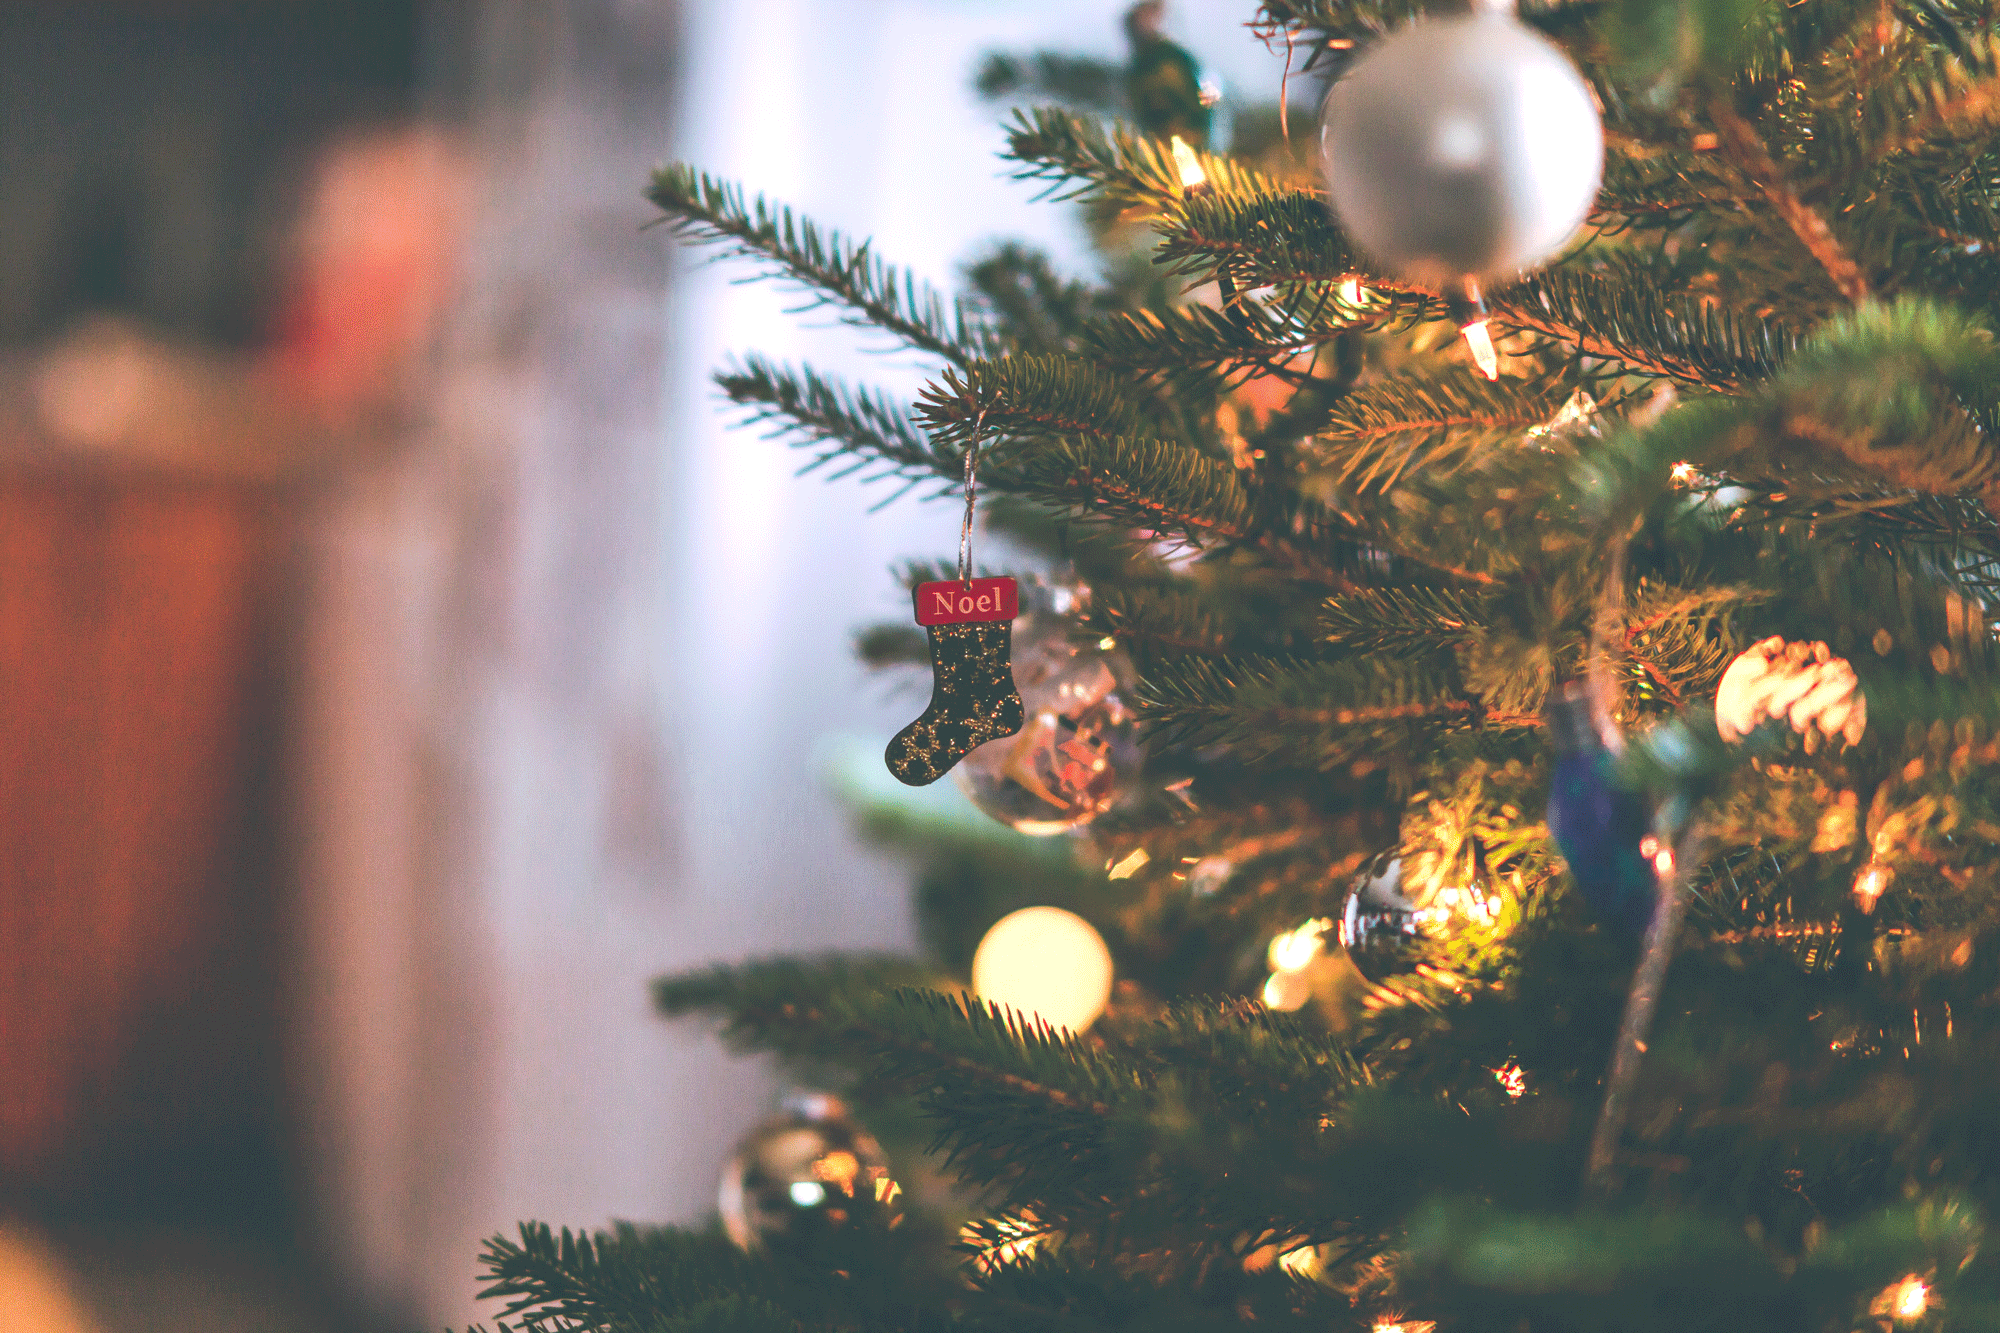 Comment entrer en contact avec l'esprit de Noël? 12 initiatives originales pour la période des fêtes. [Depositphotos - Wirestock]